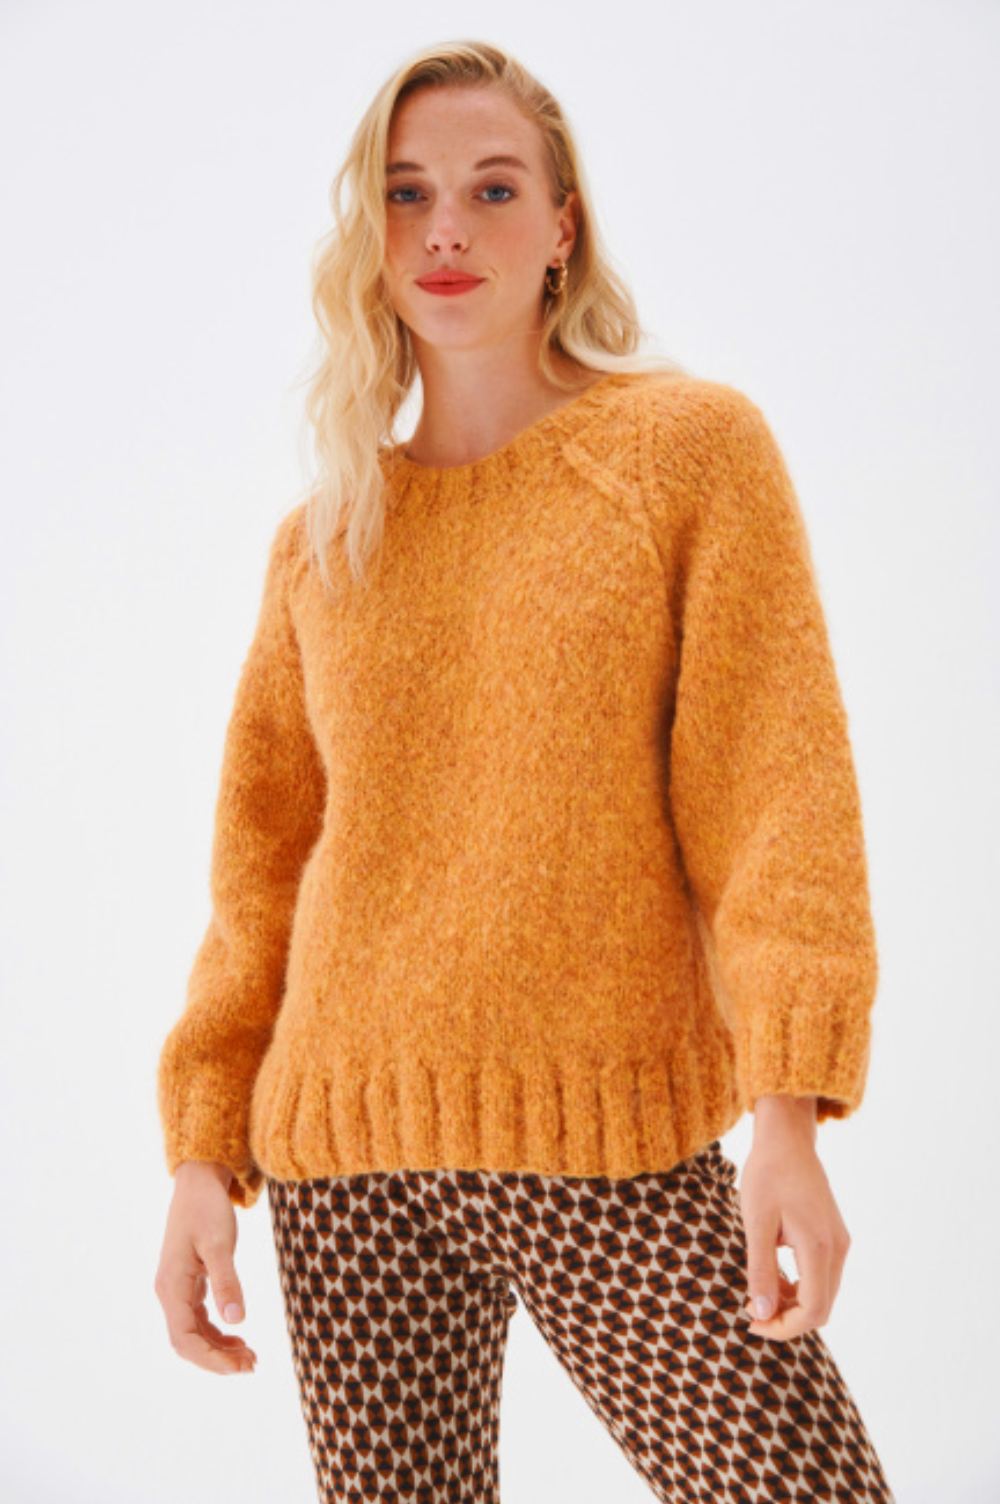 crew neck alpaca sweater jumper womens yellow butterscotch